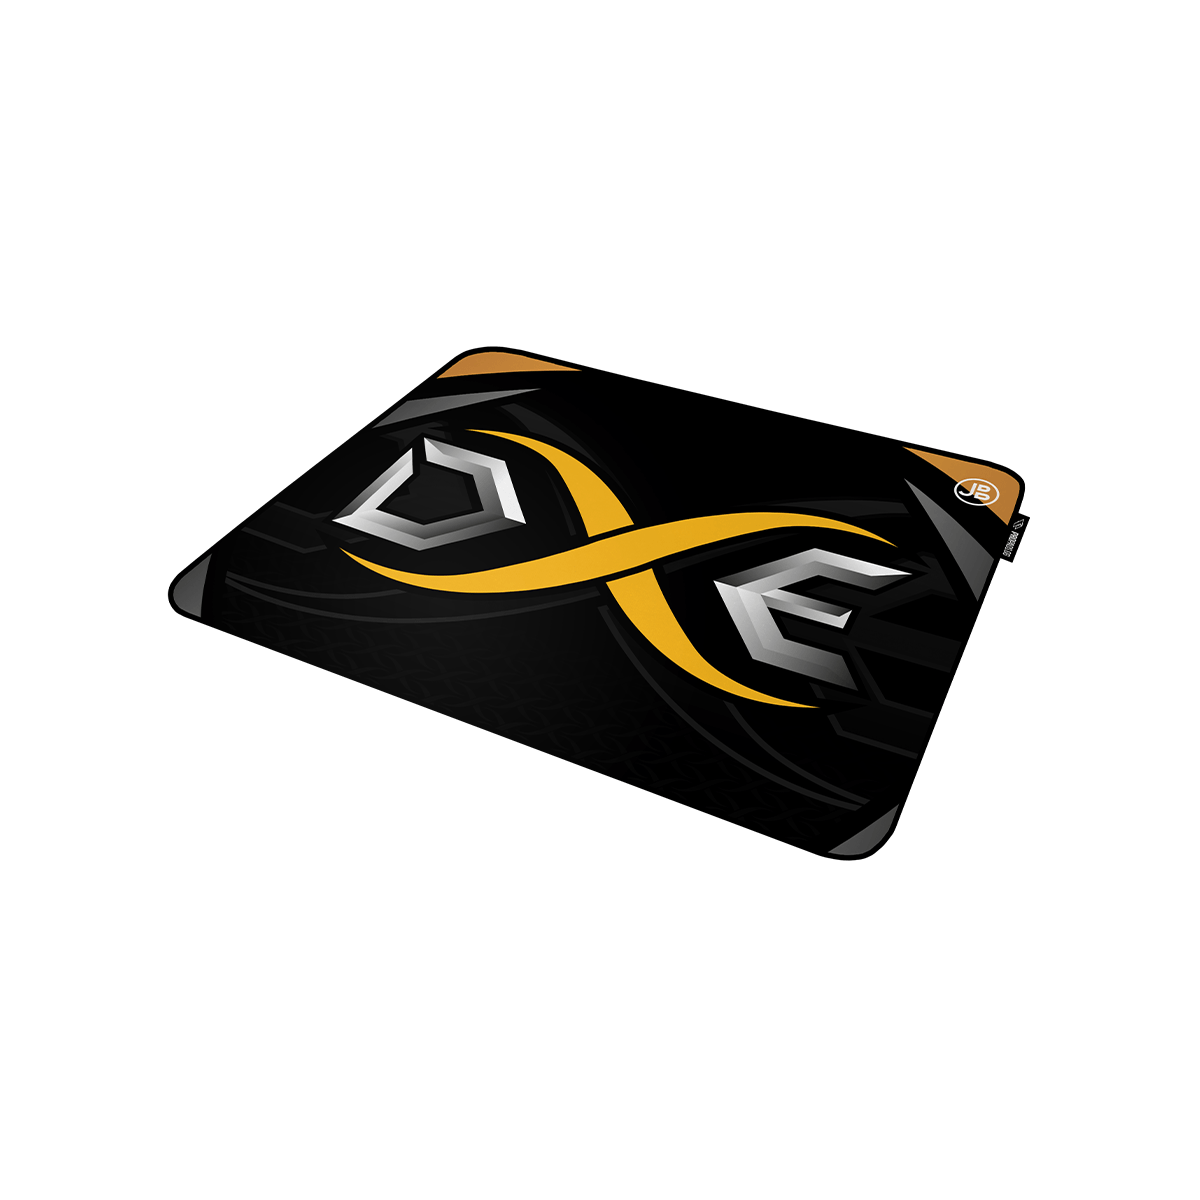 DXE - Mousepad - L